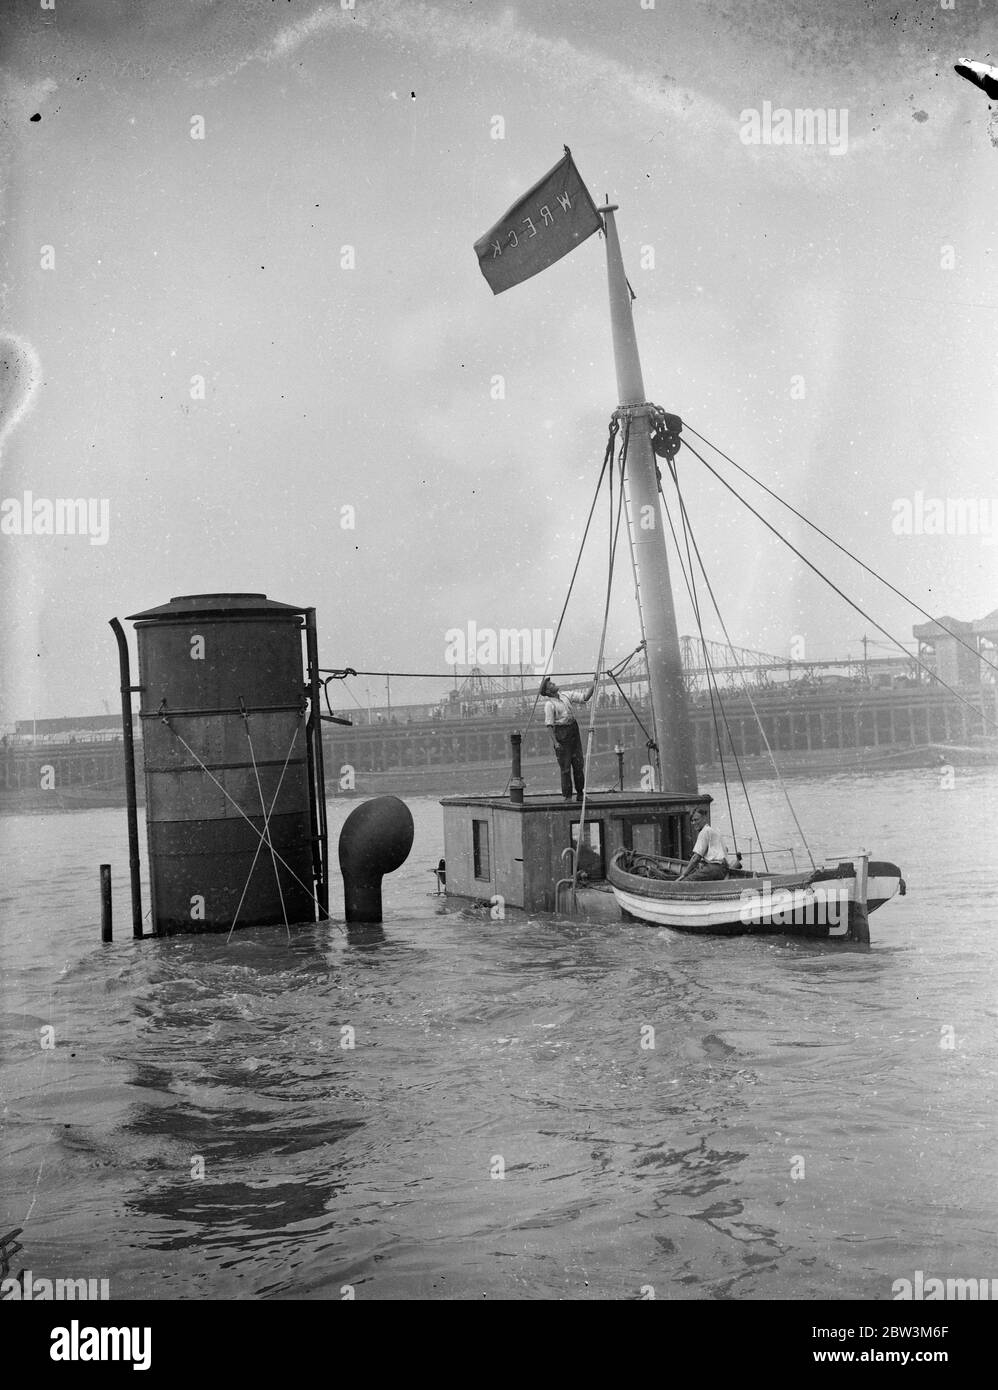 Sauve hommes de P L A préparant le navire à vapeur épaté pour élever le Cragside dans la Thame . Administration du port de London , des briquets d'épave ont commencé des opérations de récupération sur le navire de la compagnie de navires à vapeur Tyne Tans Cragside ( 458 tonnes ) qui a coulé dans Gallions Reach , à l'extérieur de l'Albert Dock après une collision avec 8the S S Ladura ( 9 , 032 tonnes ) Appartenant à la Compagnie de navigation à vapeur de l'Inde britannique . Photos montre , l'équipage de récupération du P L UN épave plus léger préparant le navire à vapeur d'épave pour lever . 9 août 1935 Banque D'Images